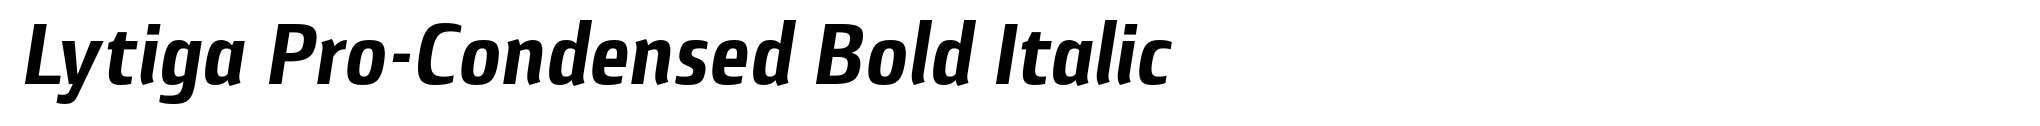 Lytiga Pro-Condensed Bold Italic image